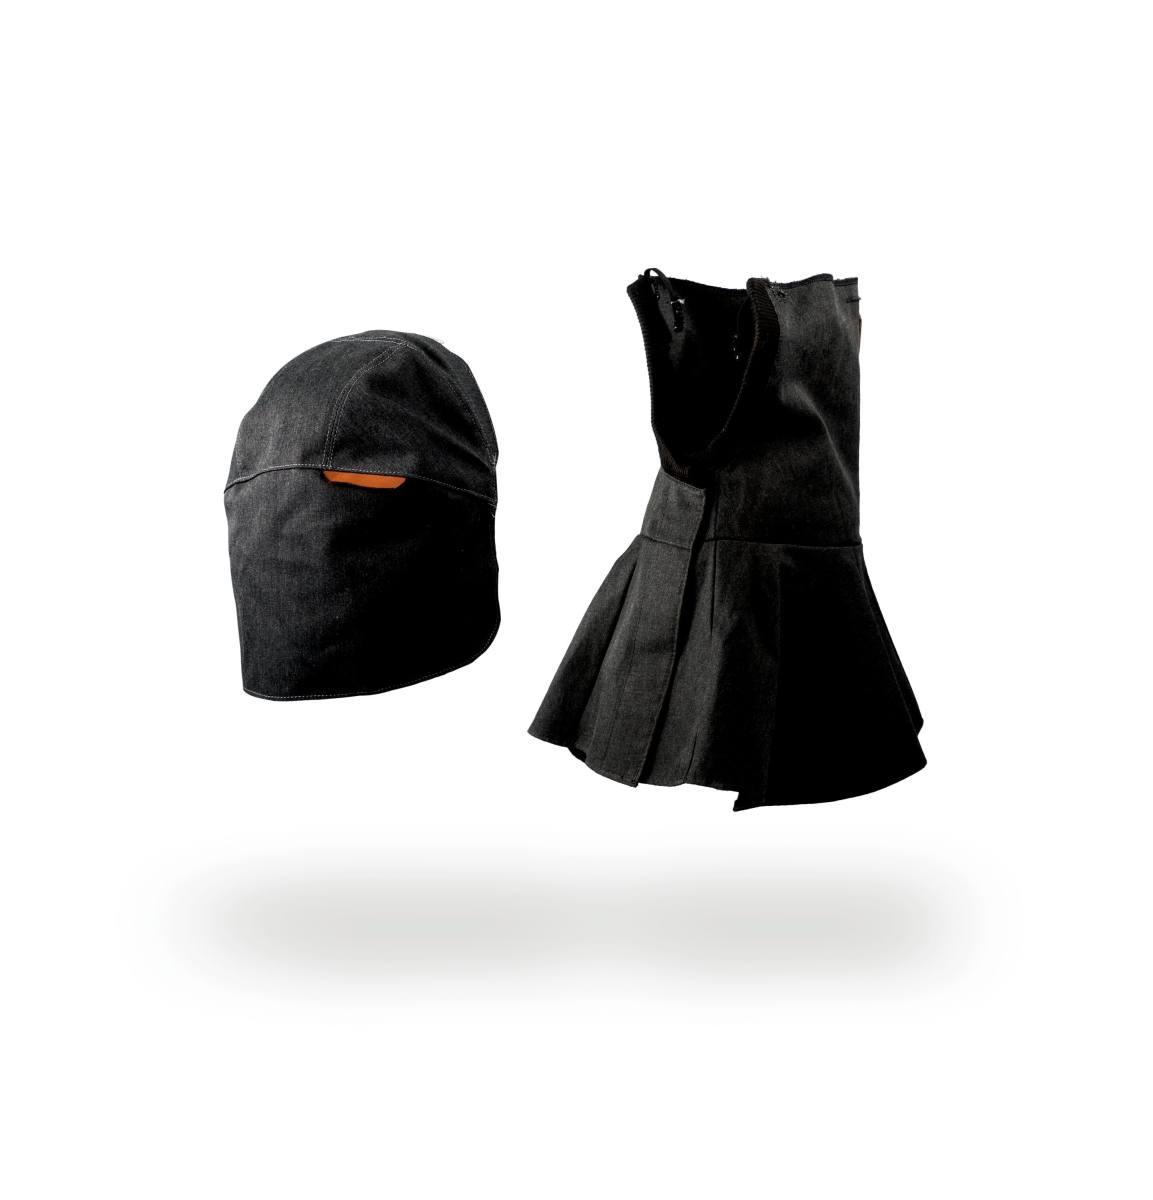 3M Grand kit de protection (protection de la tête et du cou, grand couvre-chef) pour 3M Speedglas Masque de soudure haute performance G5-01, H169035